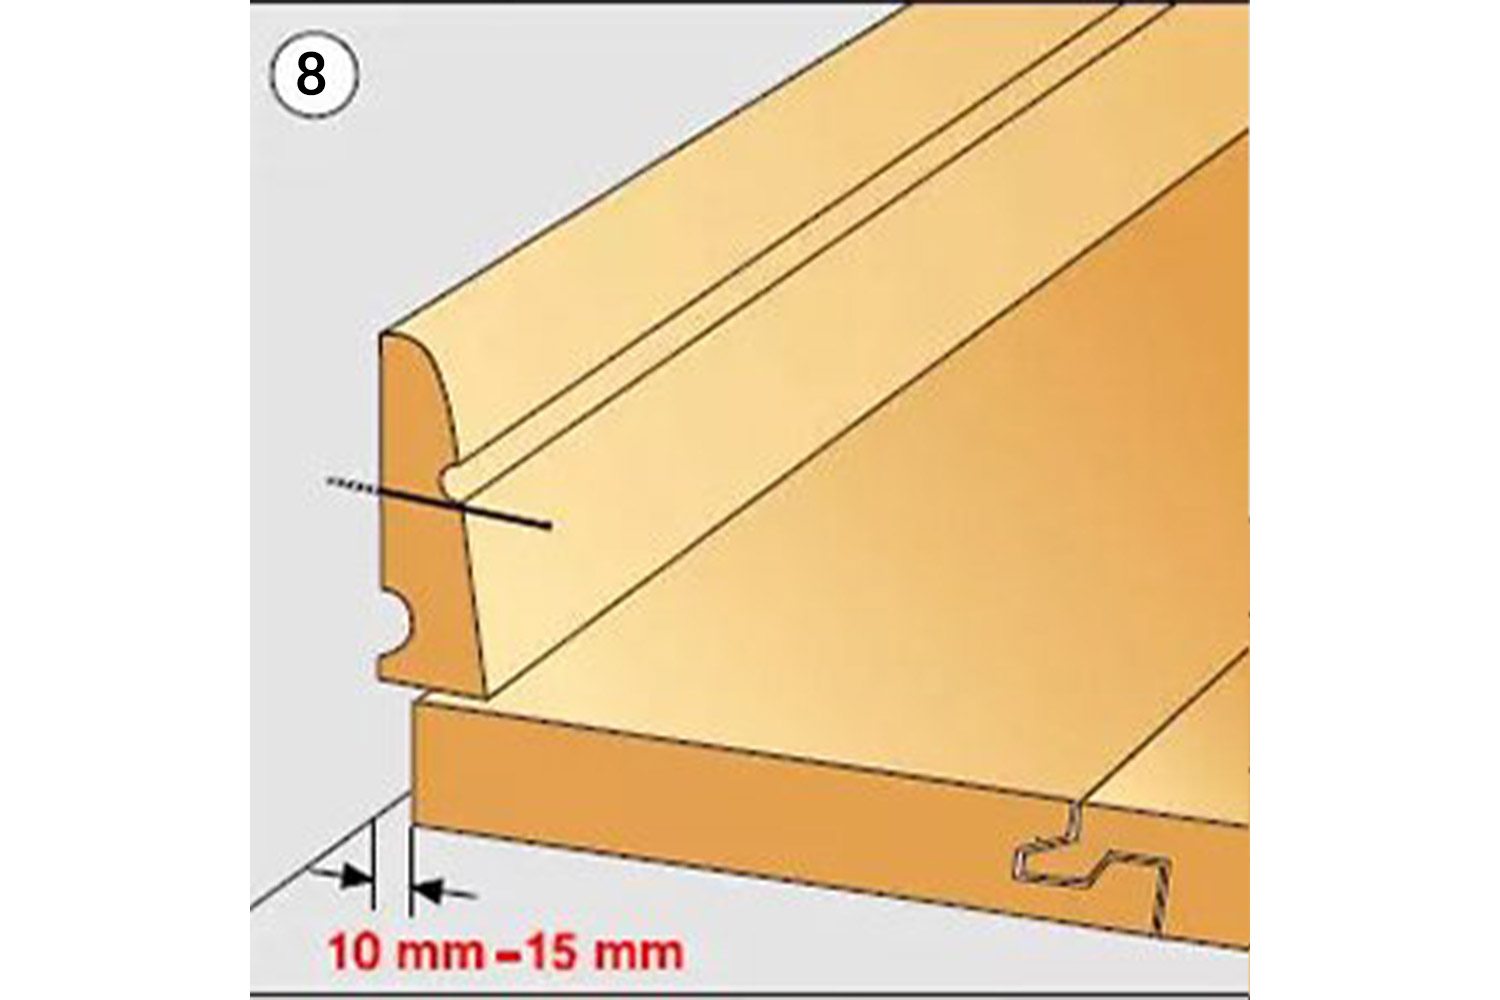 Bước 8: hướng dẫn lắp đặt sàn nhựa spc hèm khóa | hướng dẫn lắp đặt sàn nhựa giả gỗ